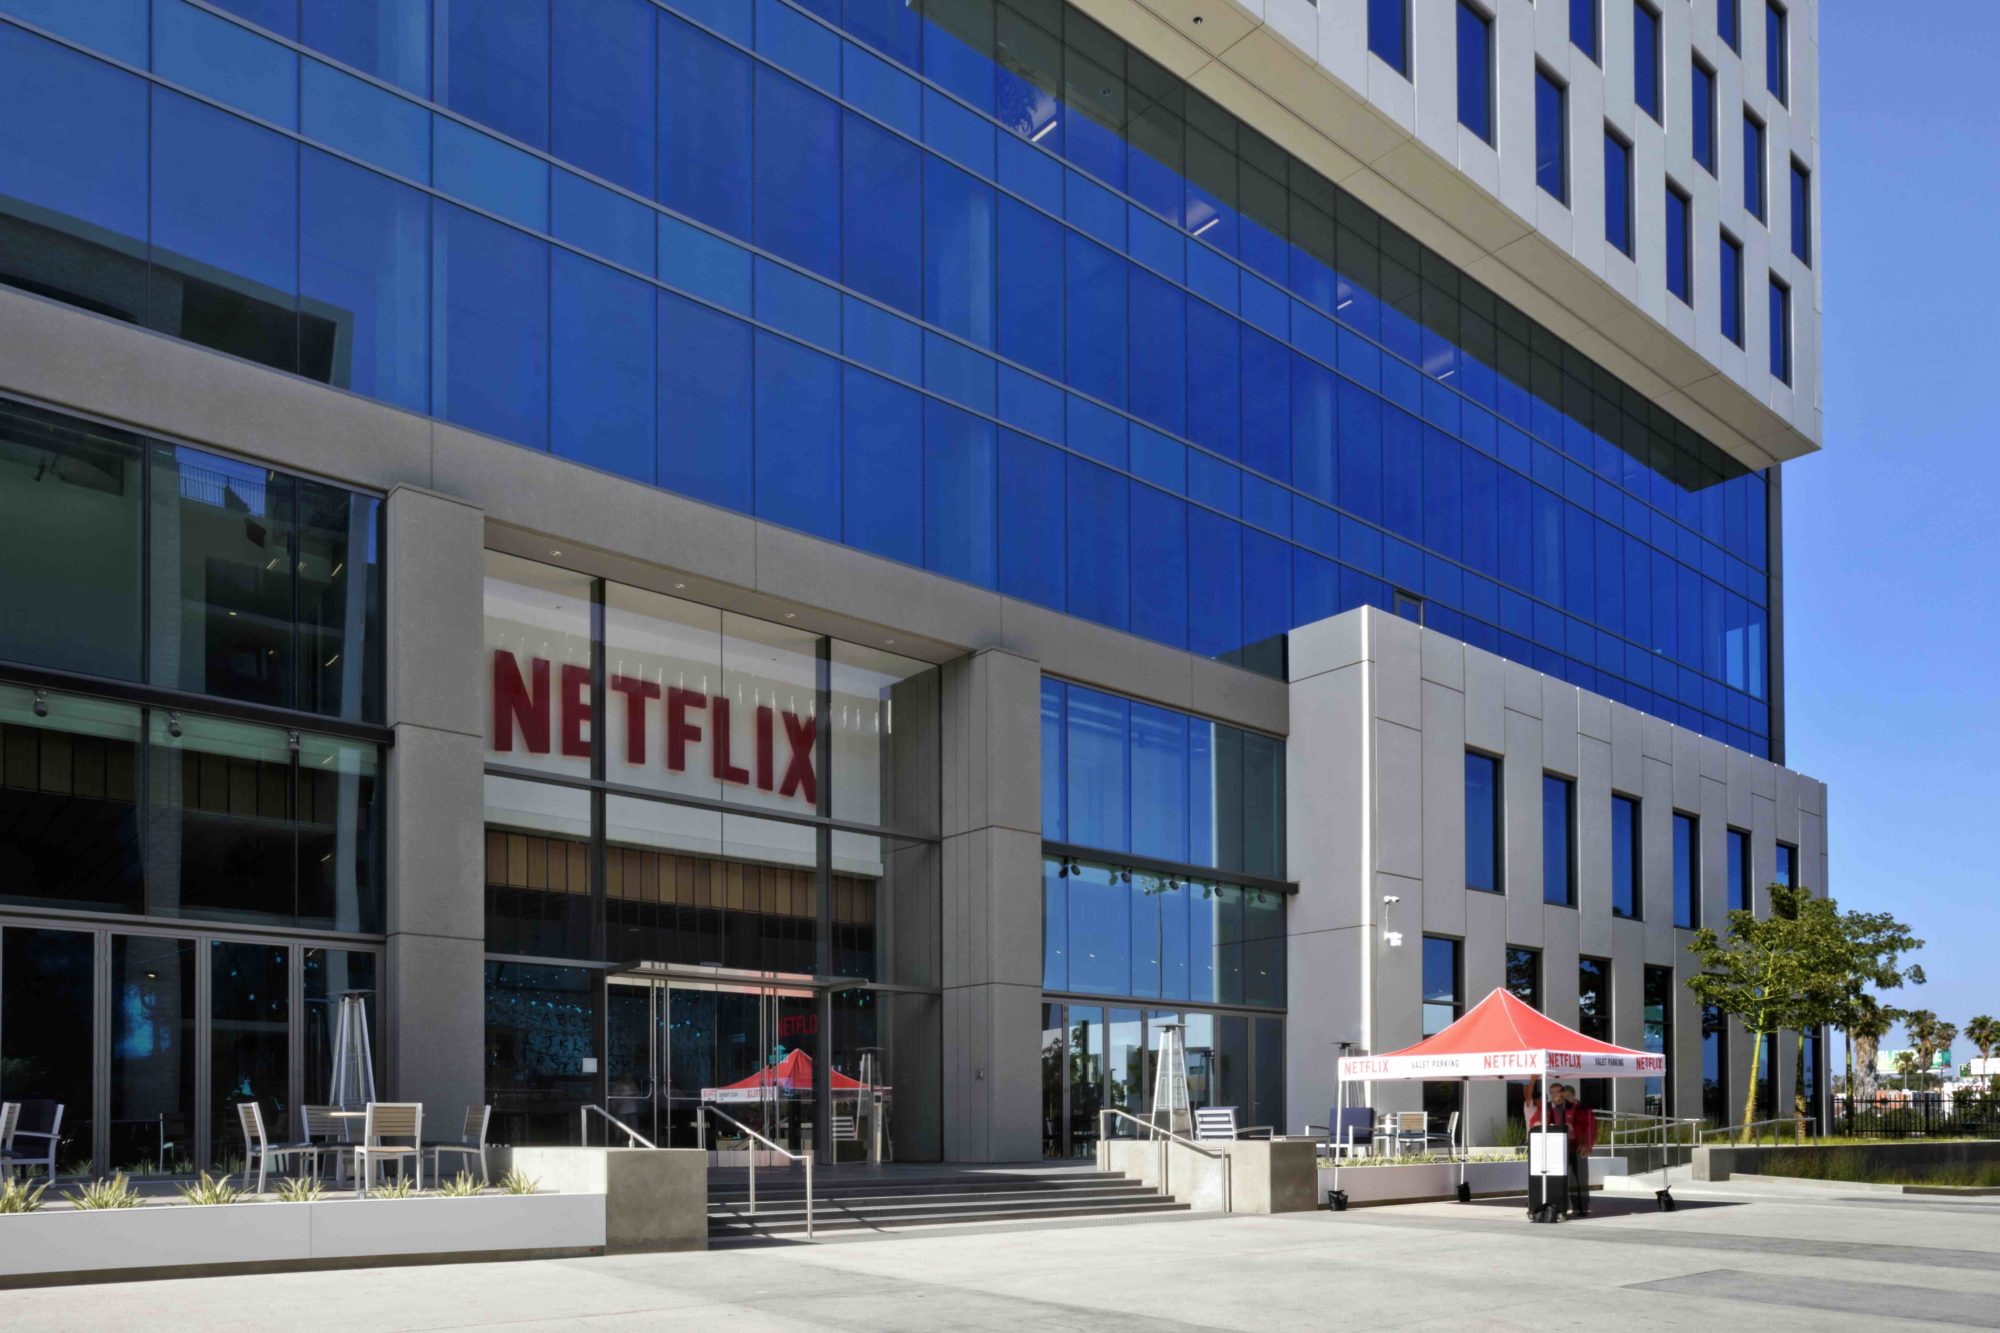 lahq 19 - Maisons Netflix : la plateforme de streaming voit en grand et s'apprête à ouvrir ses propres boutiques